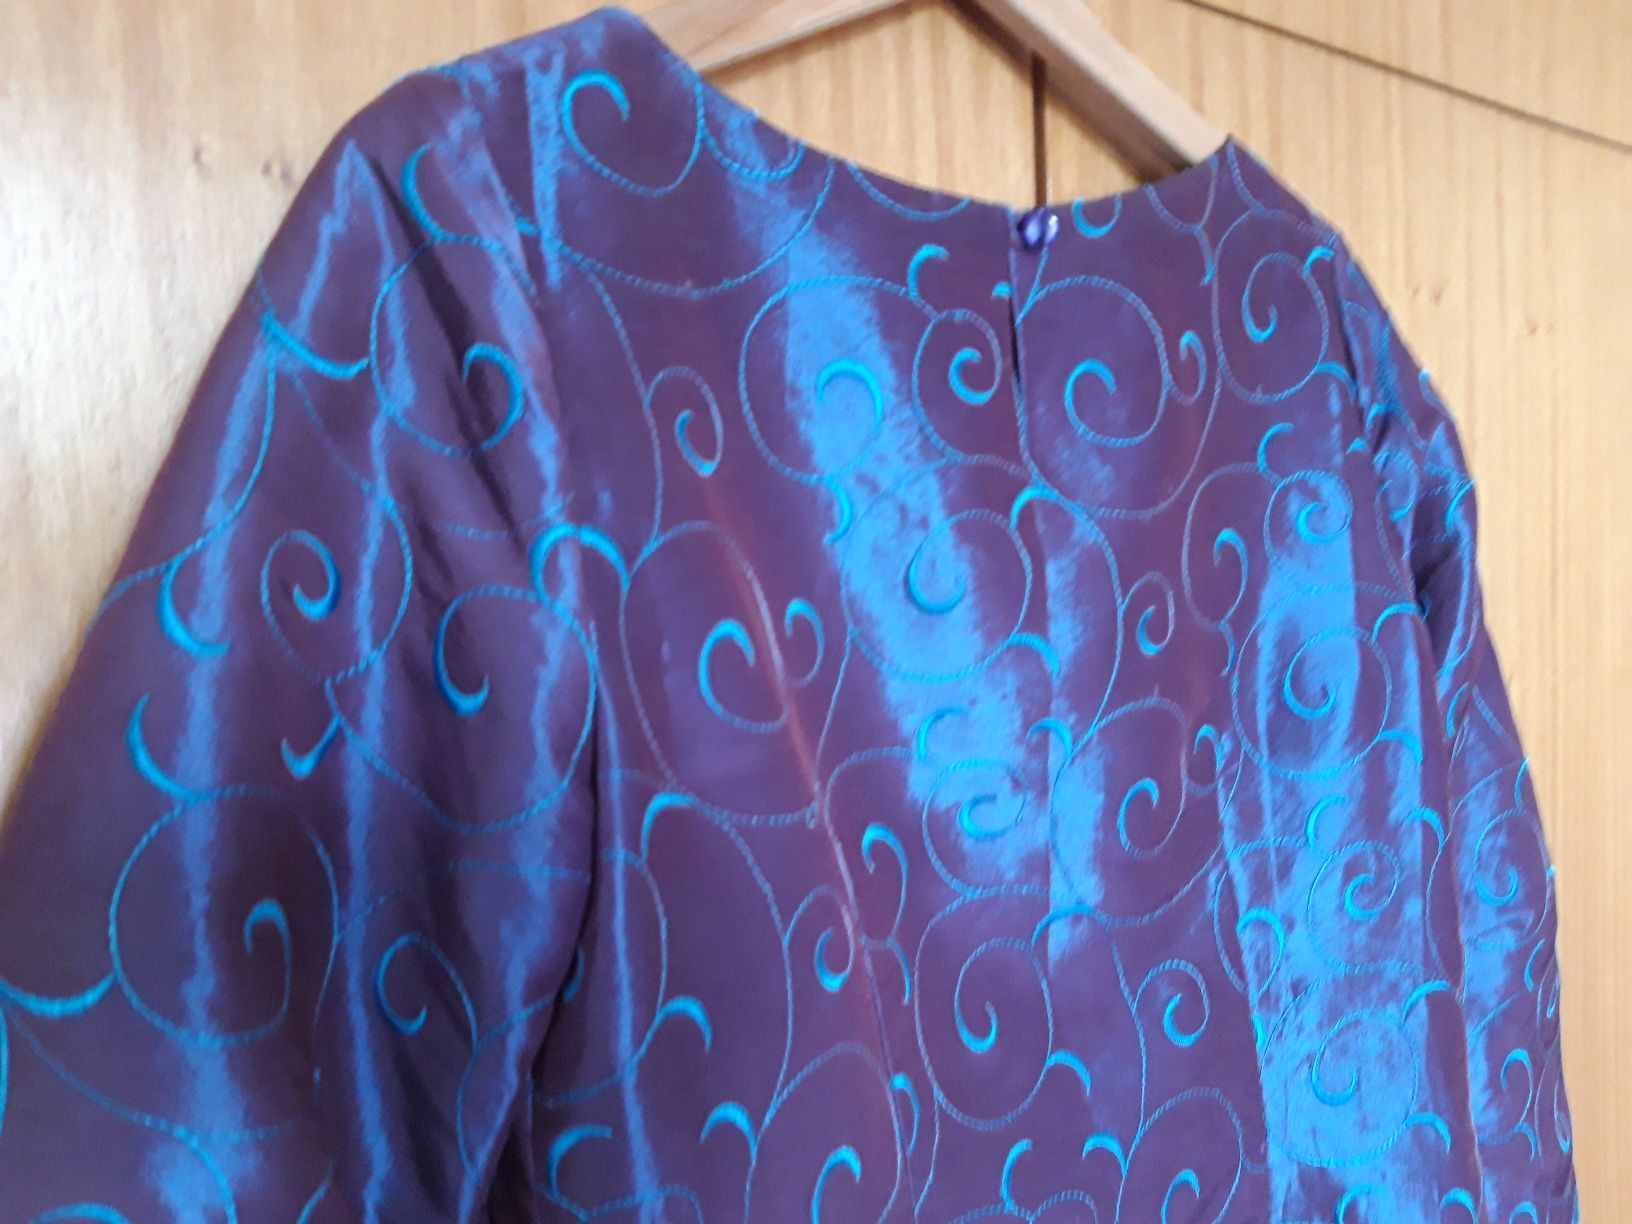 Deslumbrante blusa de festa de cor lilás c/ padrões azuis (M)